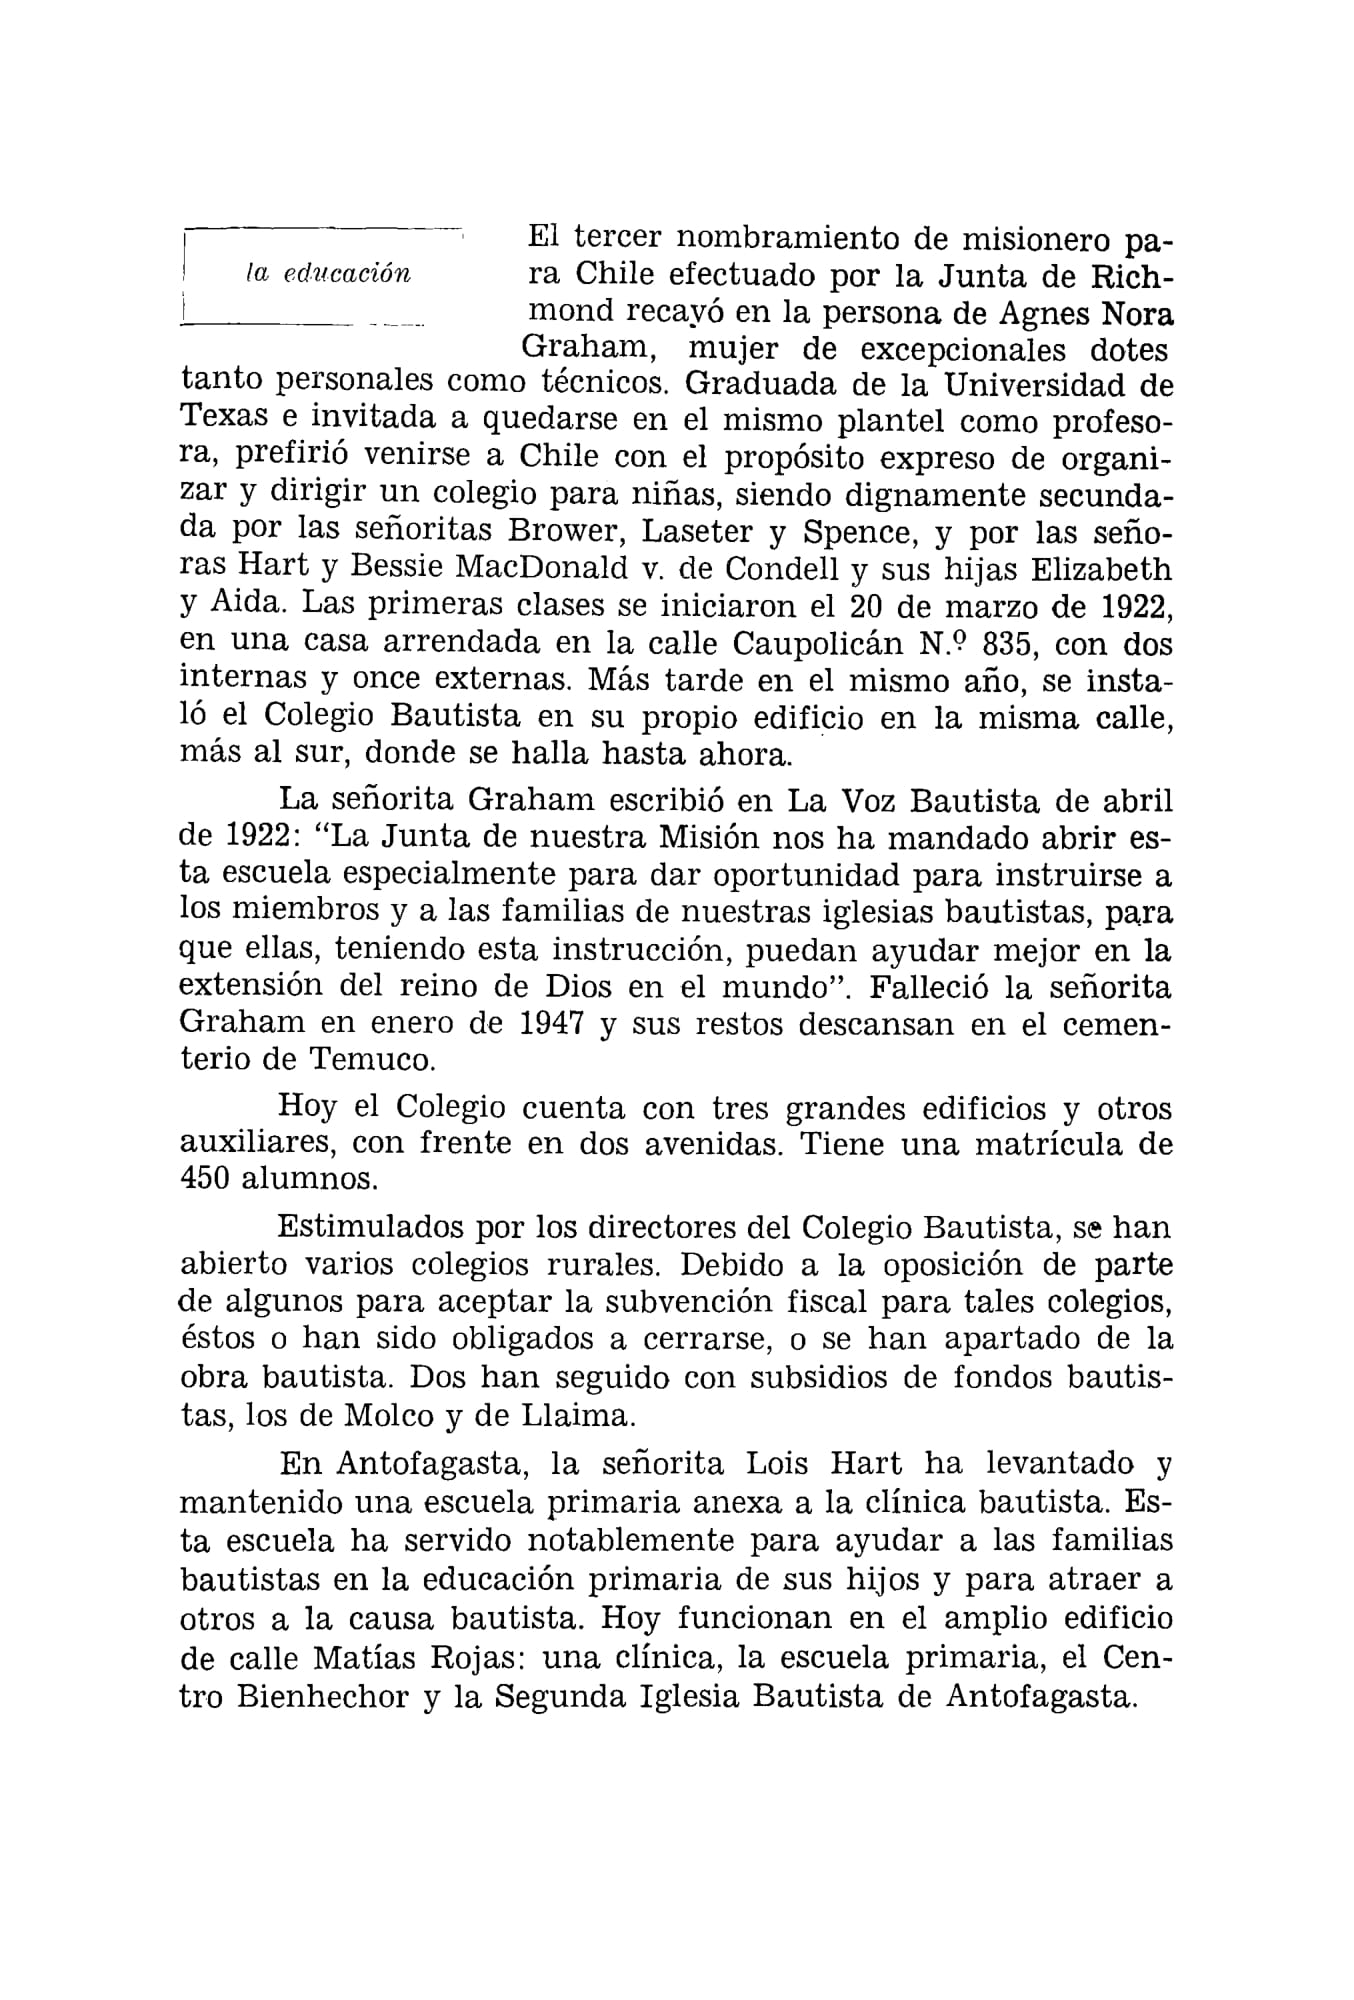 Convención de Chile aniversario 50 1908-1958-19.jpg